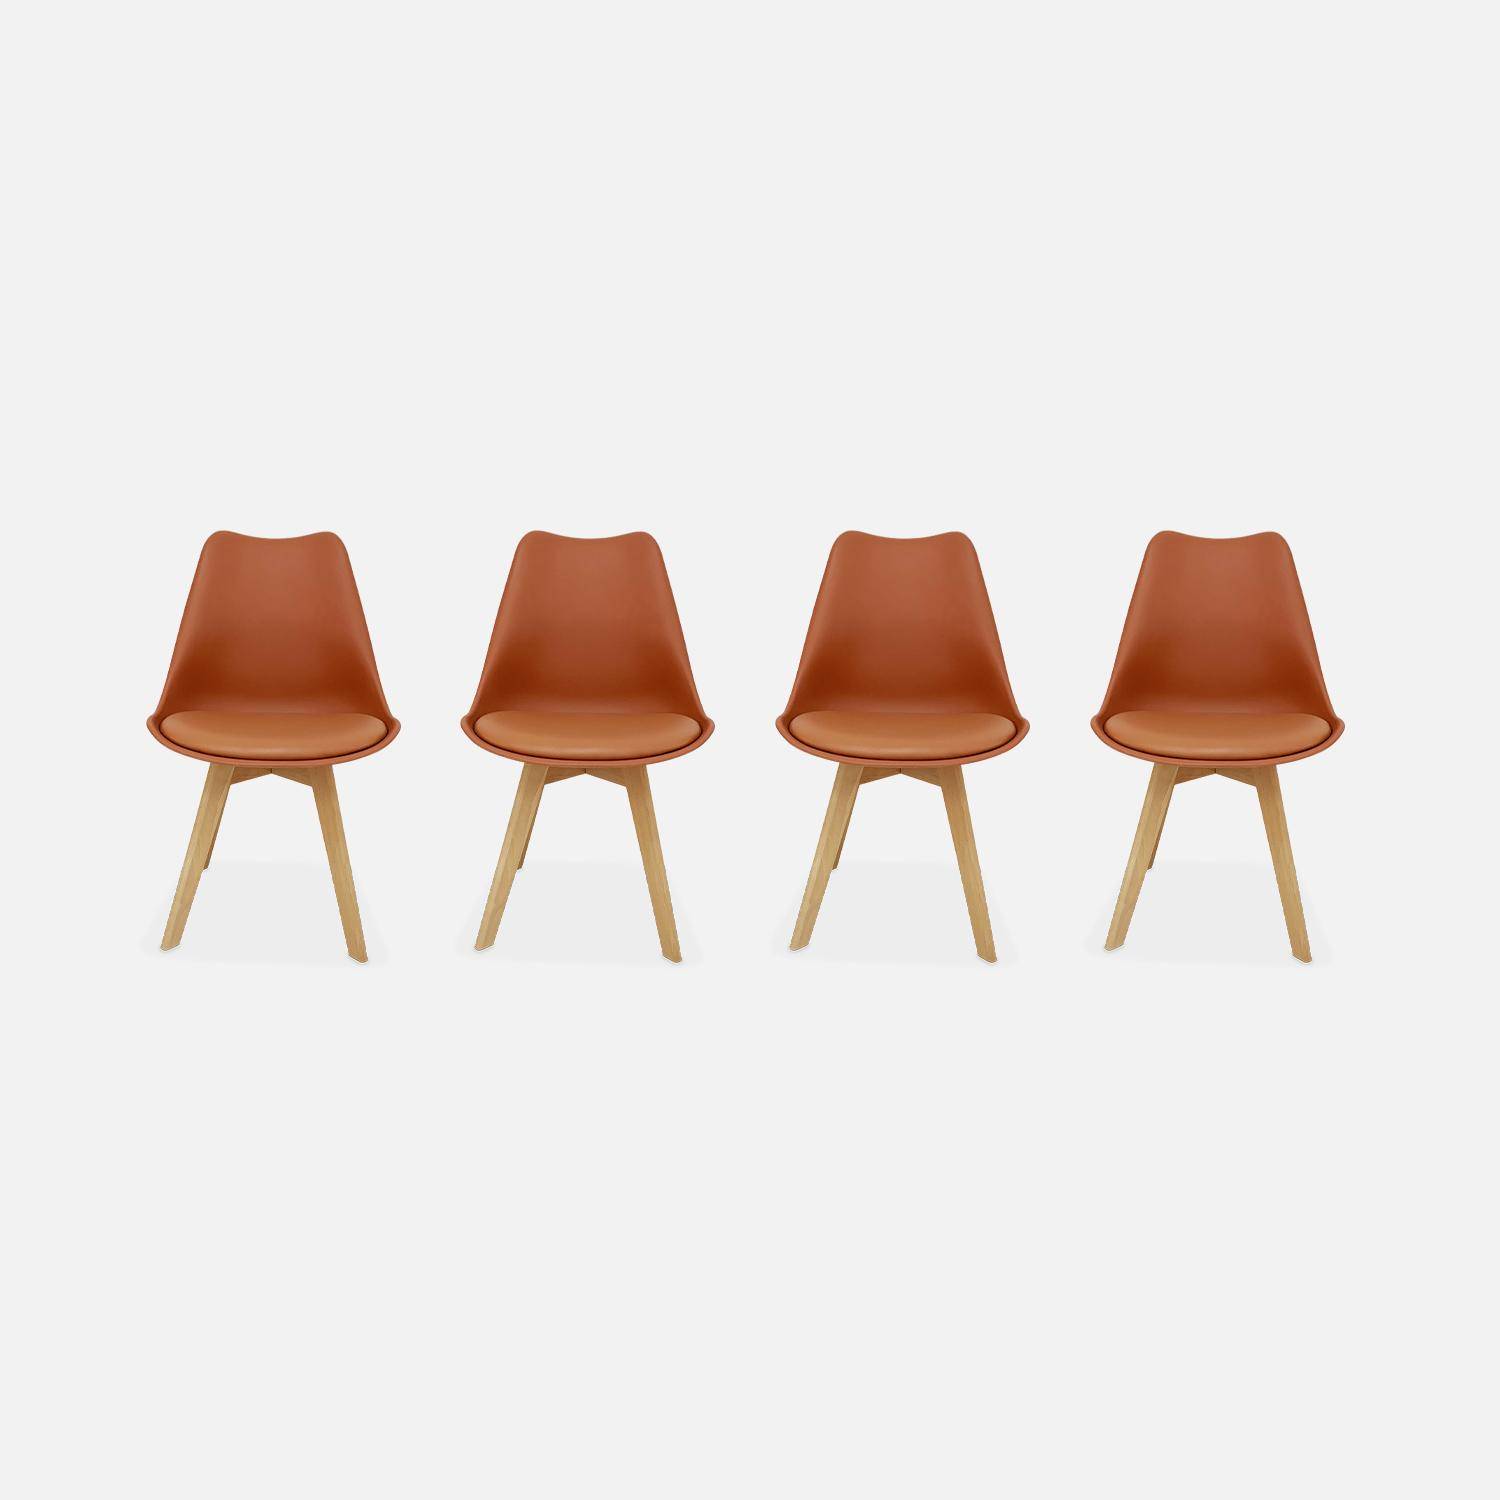 Conjunto de 4 sillas escandinavas, patas de madera de haya, asientos individuales, terracota,sweeek,Photo4